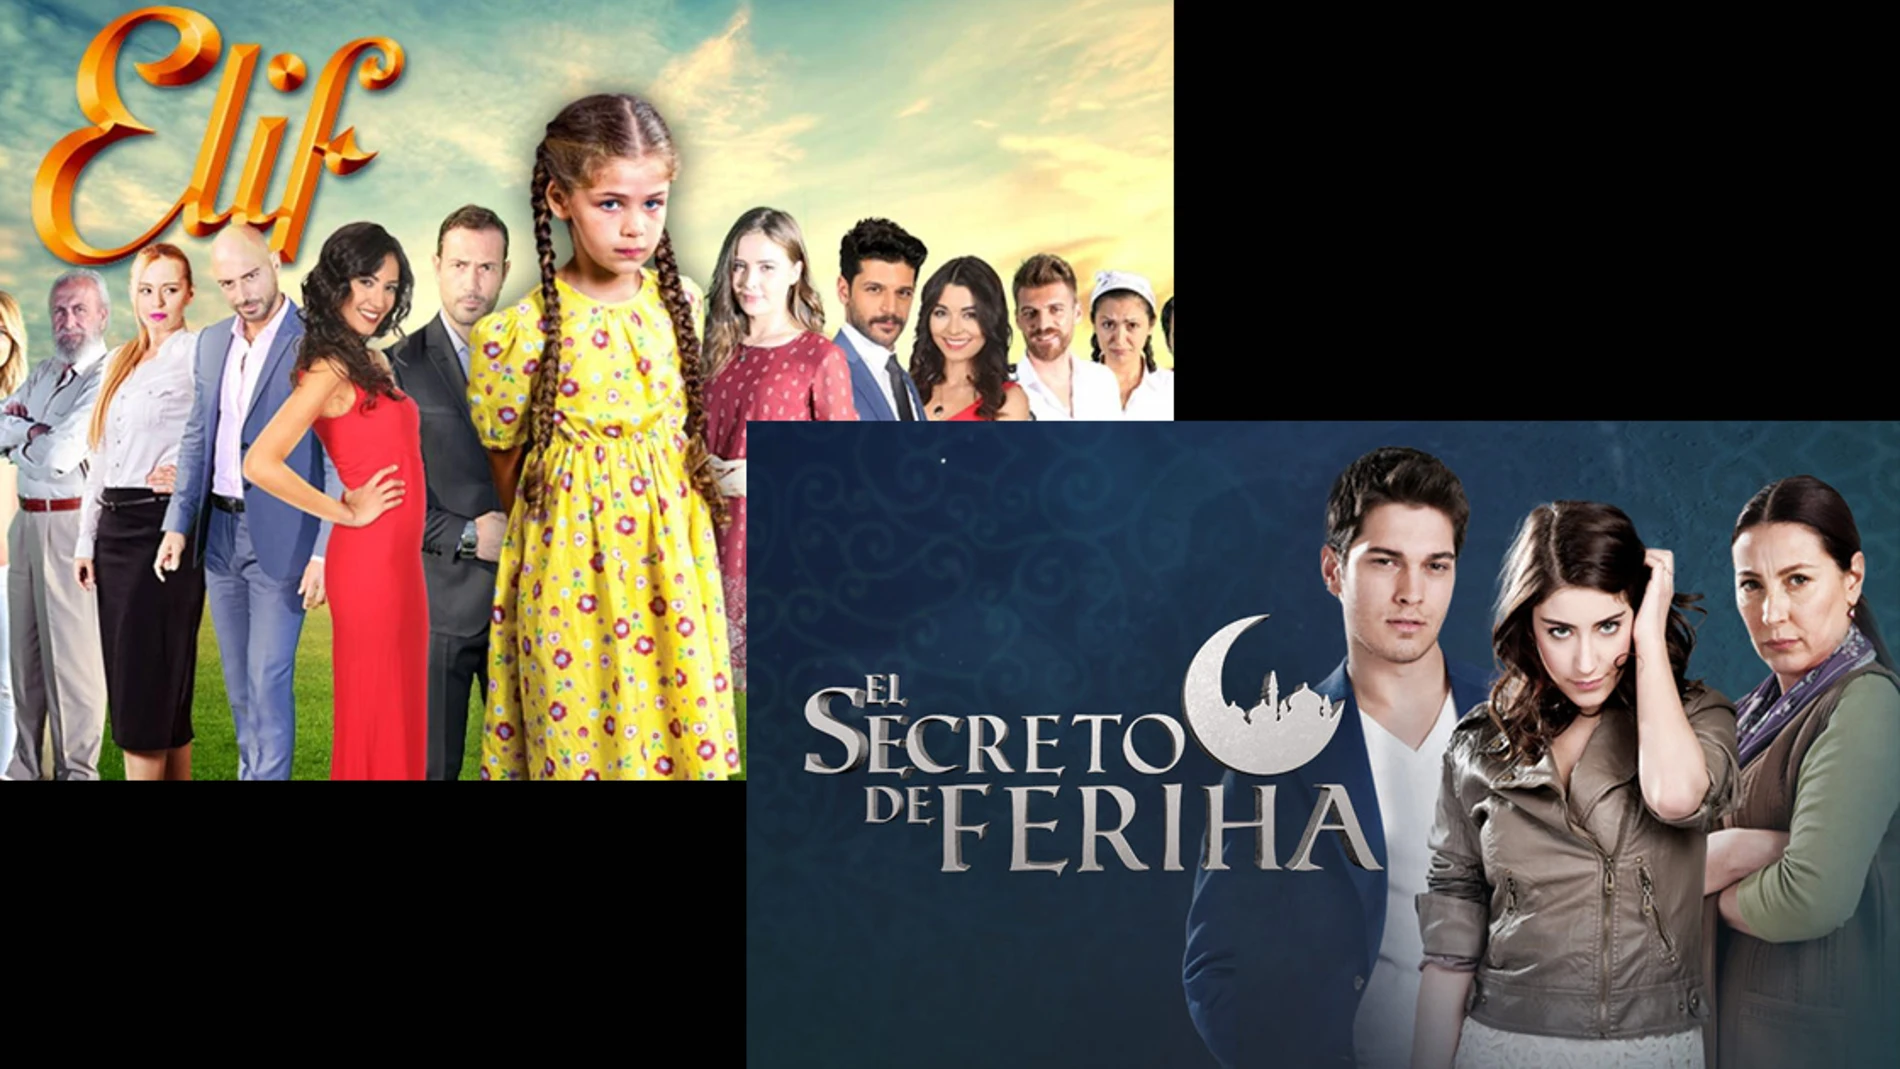 Nova adquiere los derechos de ’El Secreto de Feriha’ y ‘Elif’ tras el gran estreno de ‘Sila’